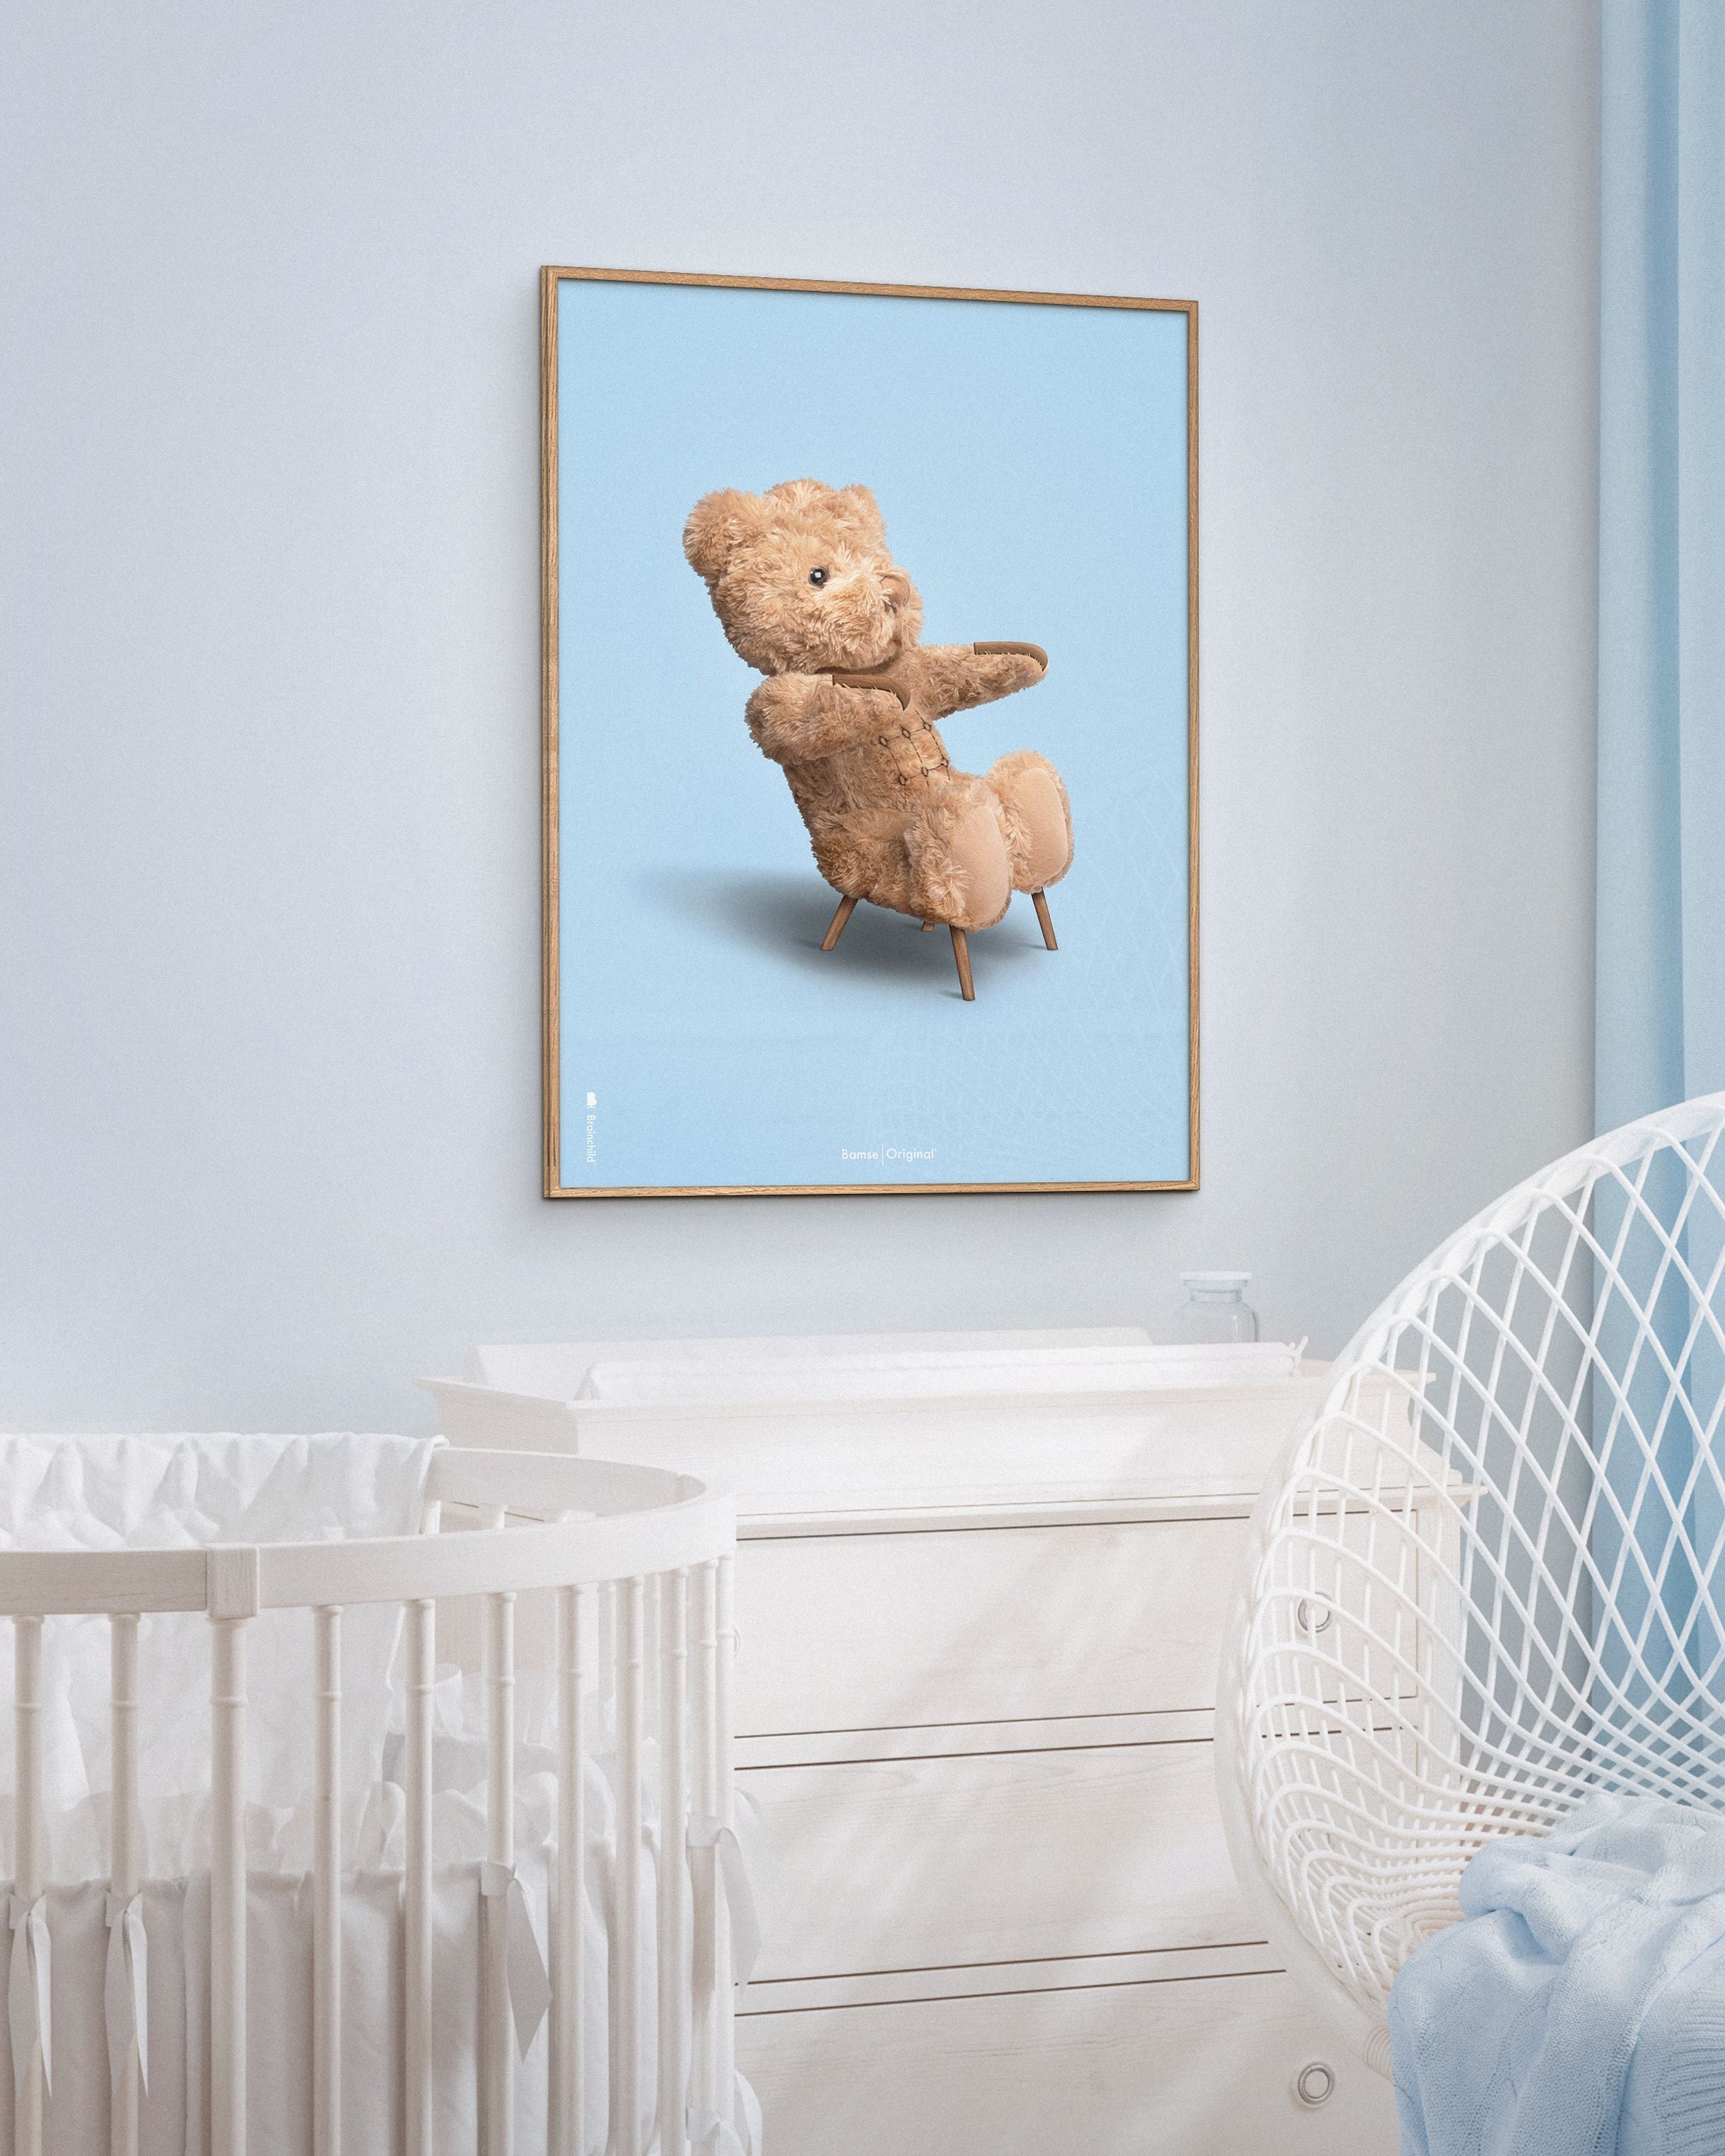 Brainchild Teddybeer klassieke poster messing gekleurd frame 50x70 cm, lichtblauwe achtergrond